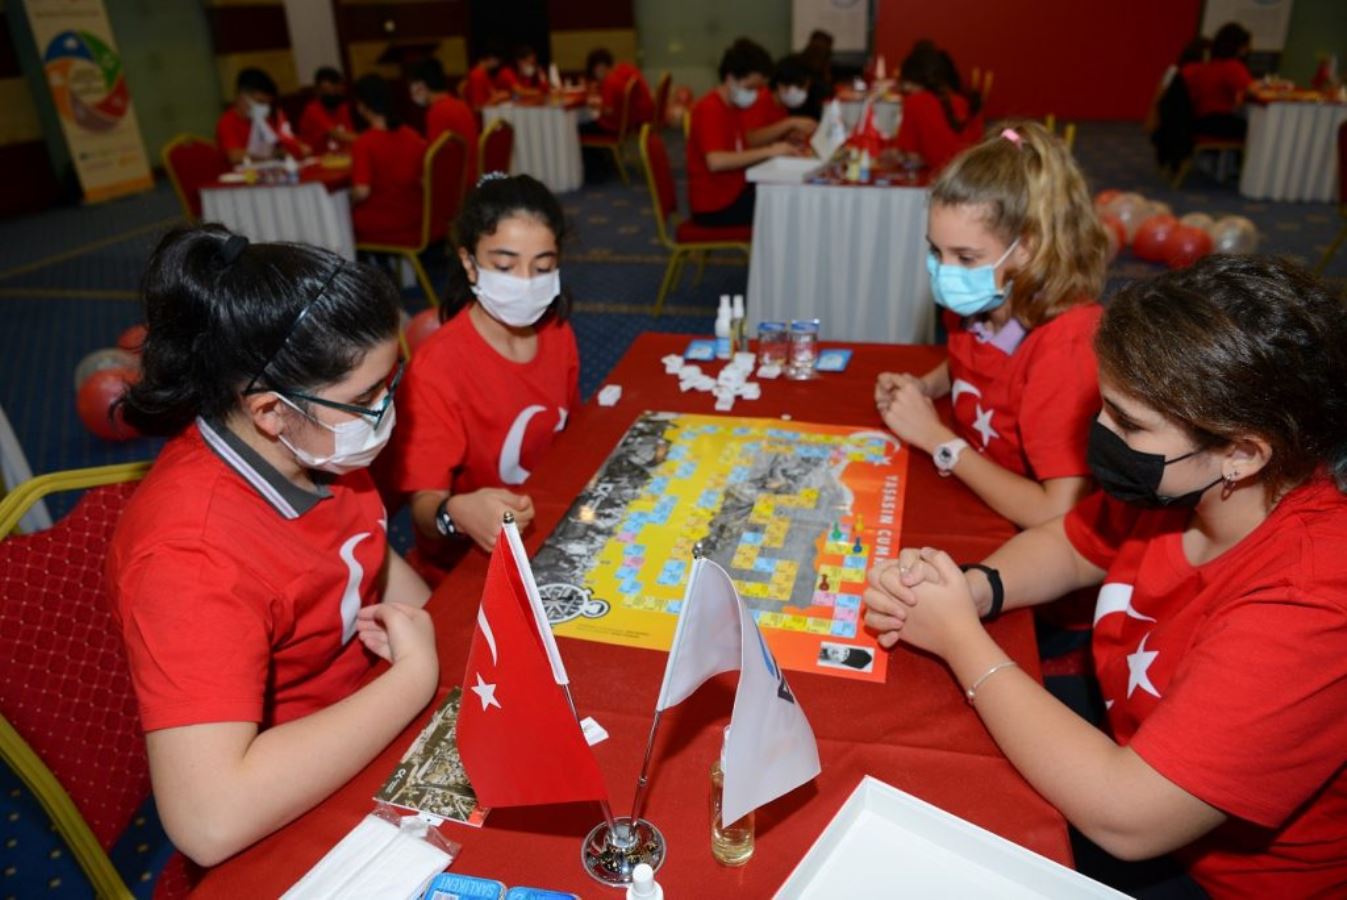 Antalya Ticaret ve Sanayi Odası'ndan 'Yaşasın Cumhuriyet' turnuvası